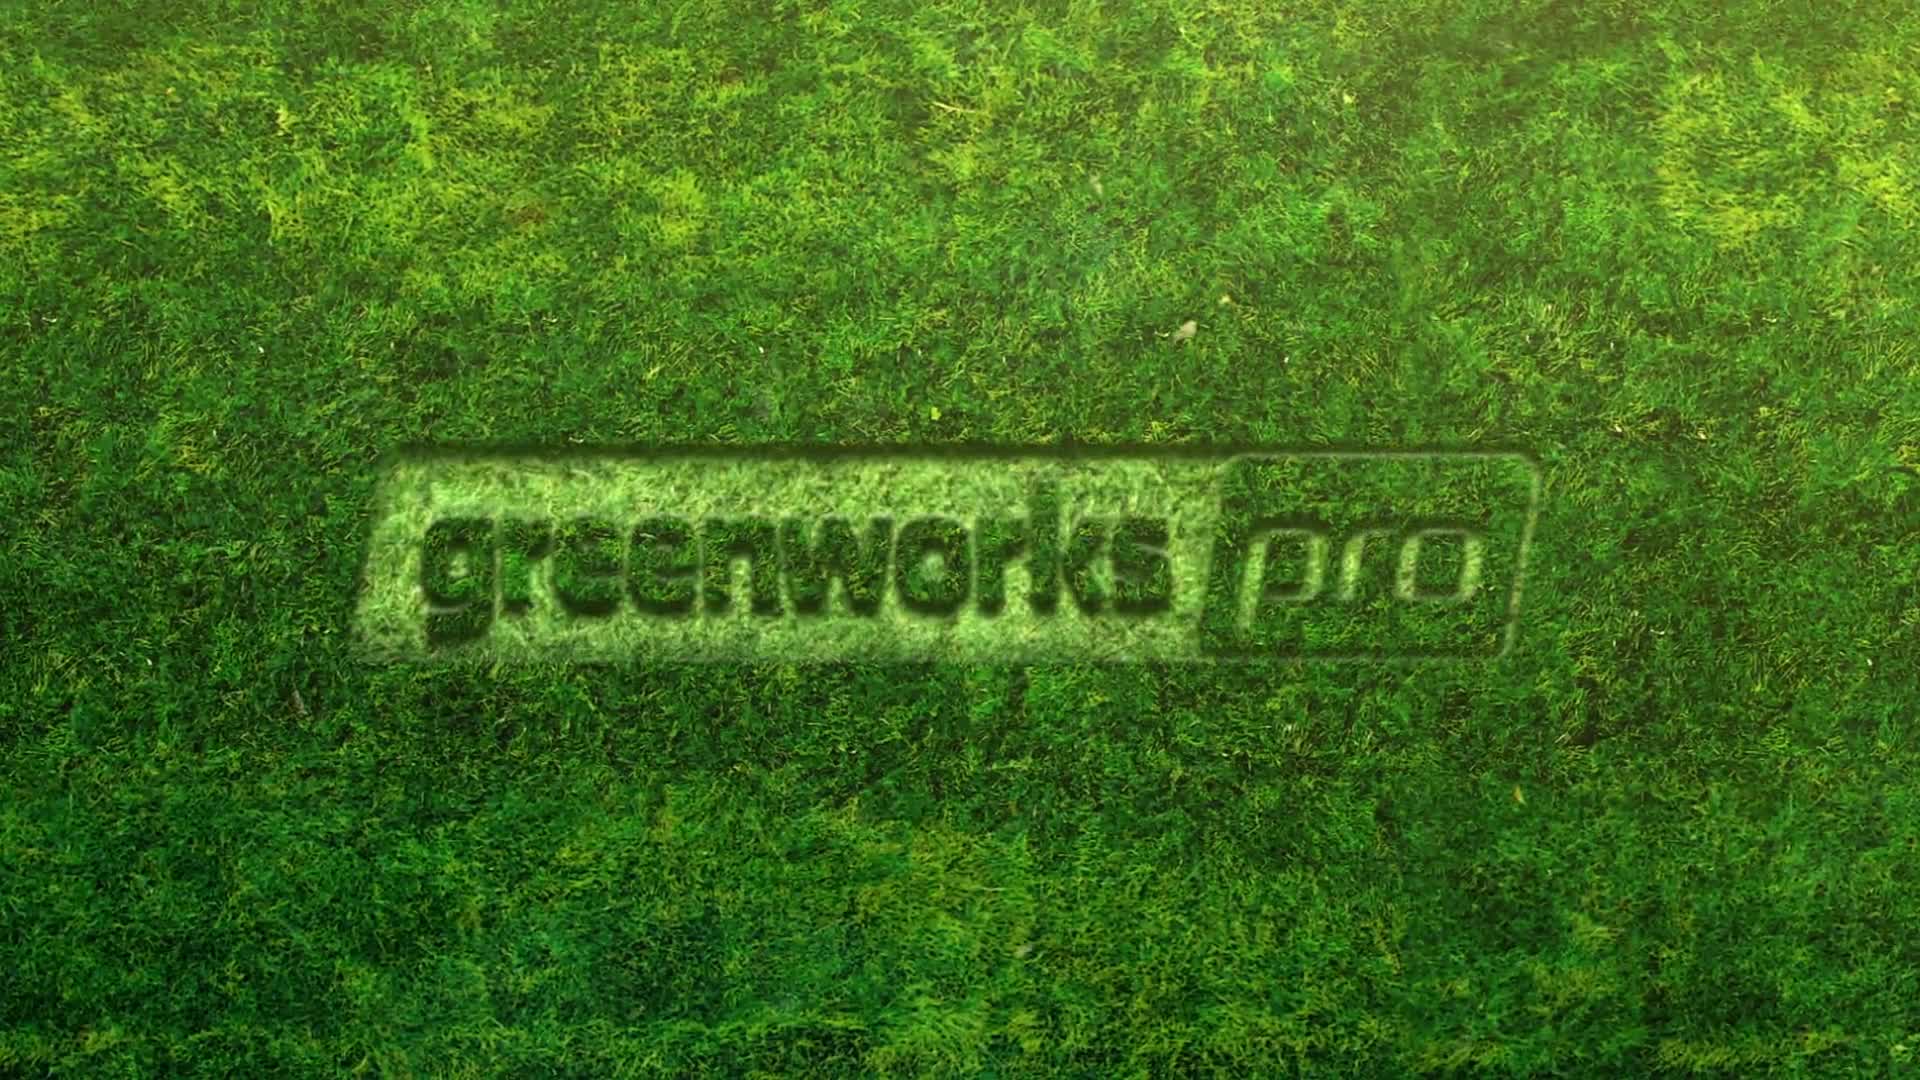 greenworks string trimmer 60v